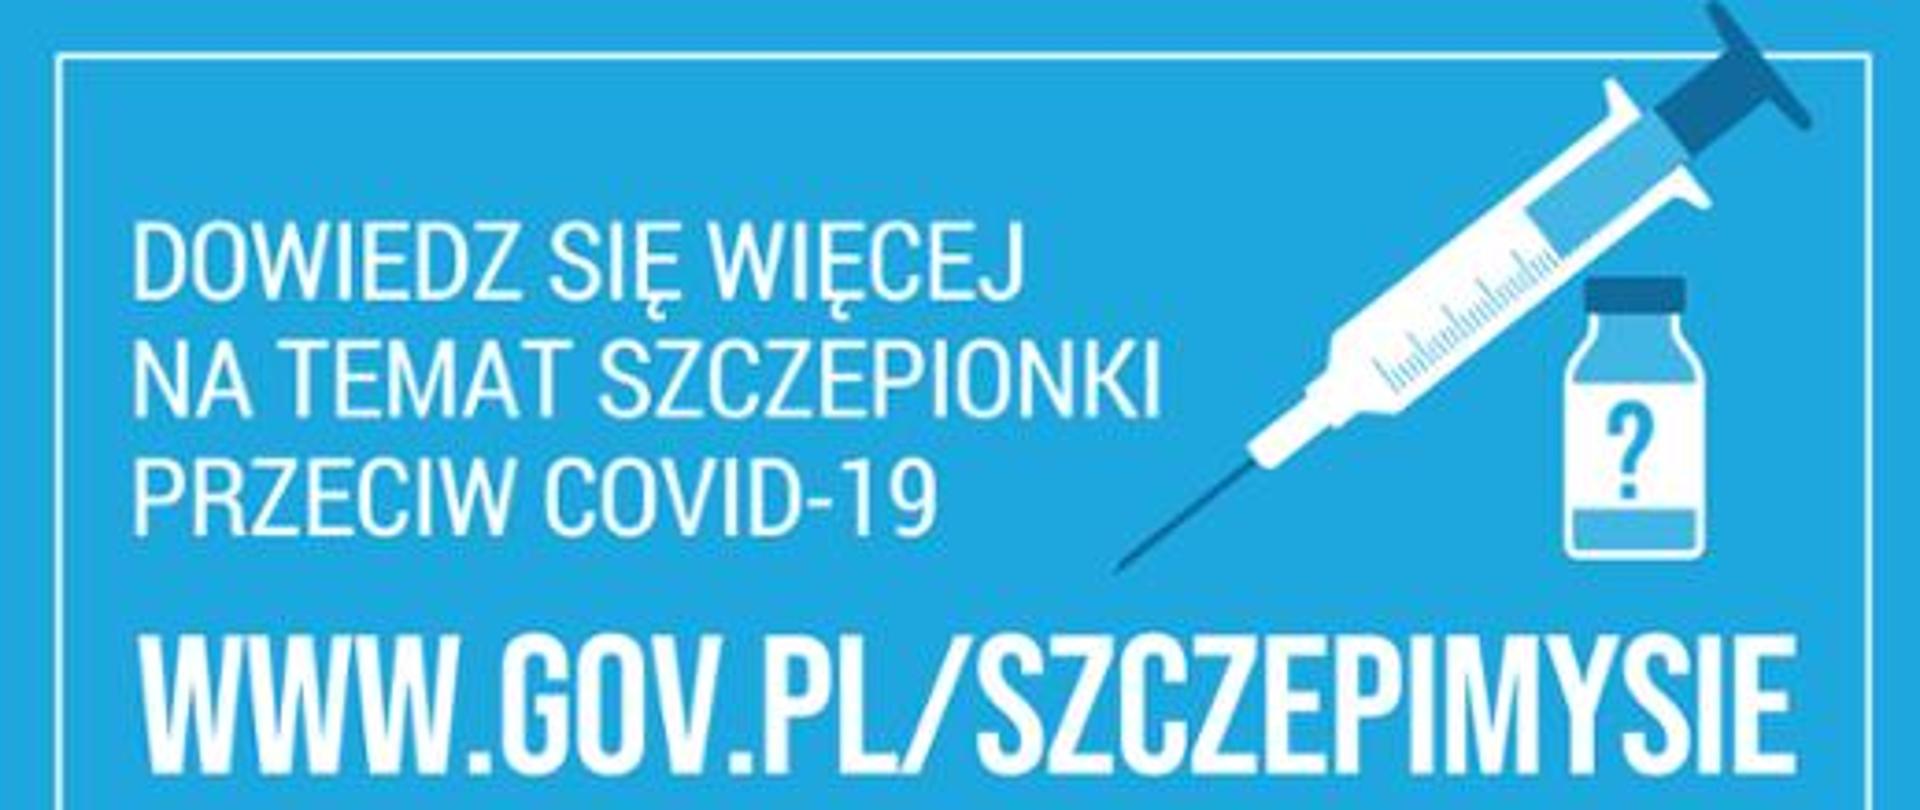 Zdjęcie przedstawia plakat na którym widnieje adres strony internetowej, na której można dowiedzieć się więcej o akcji szczepienia